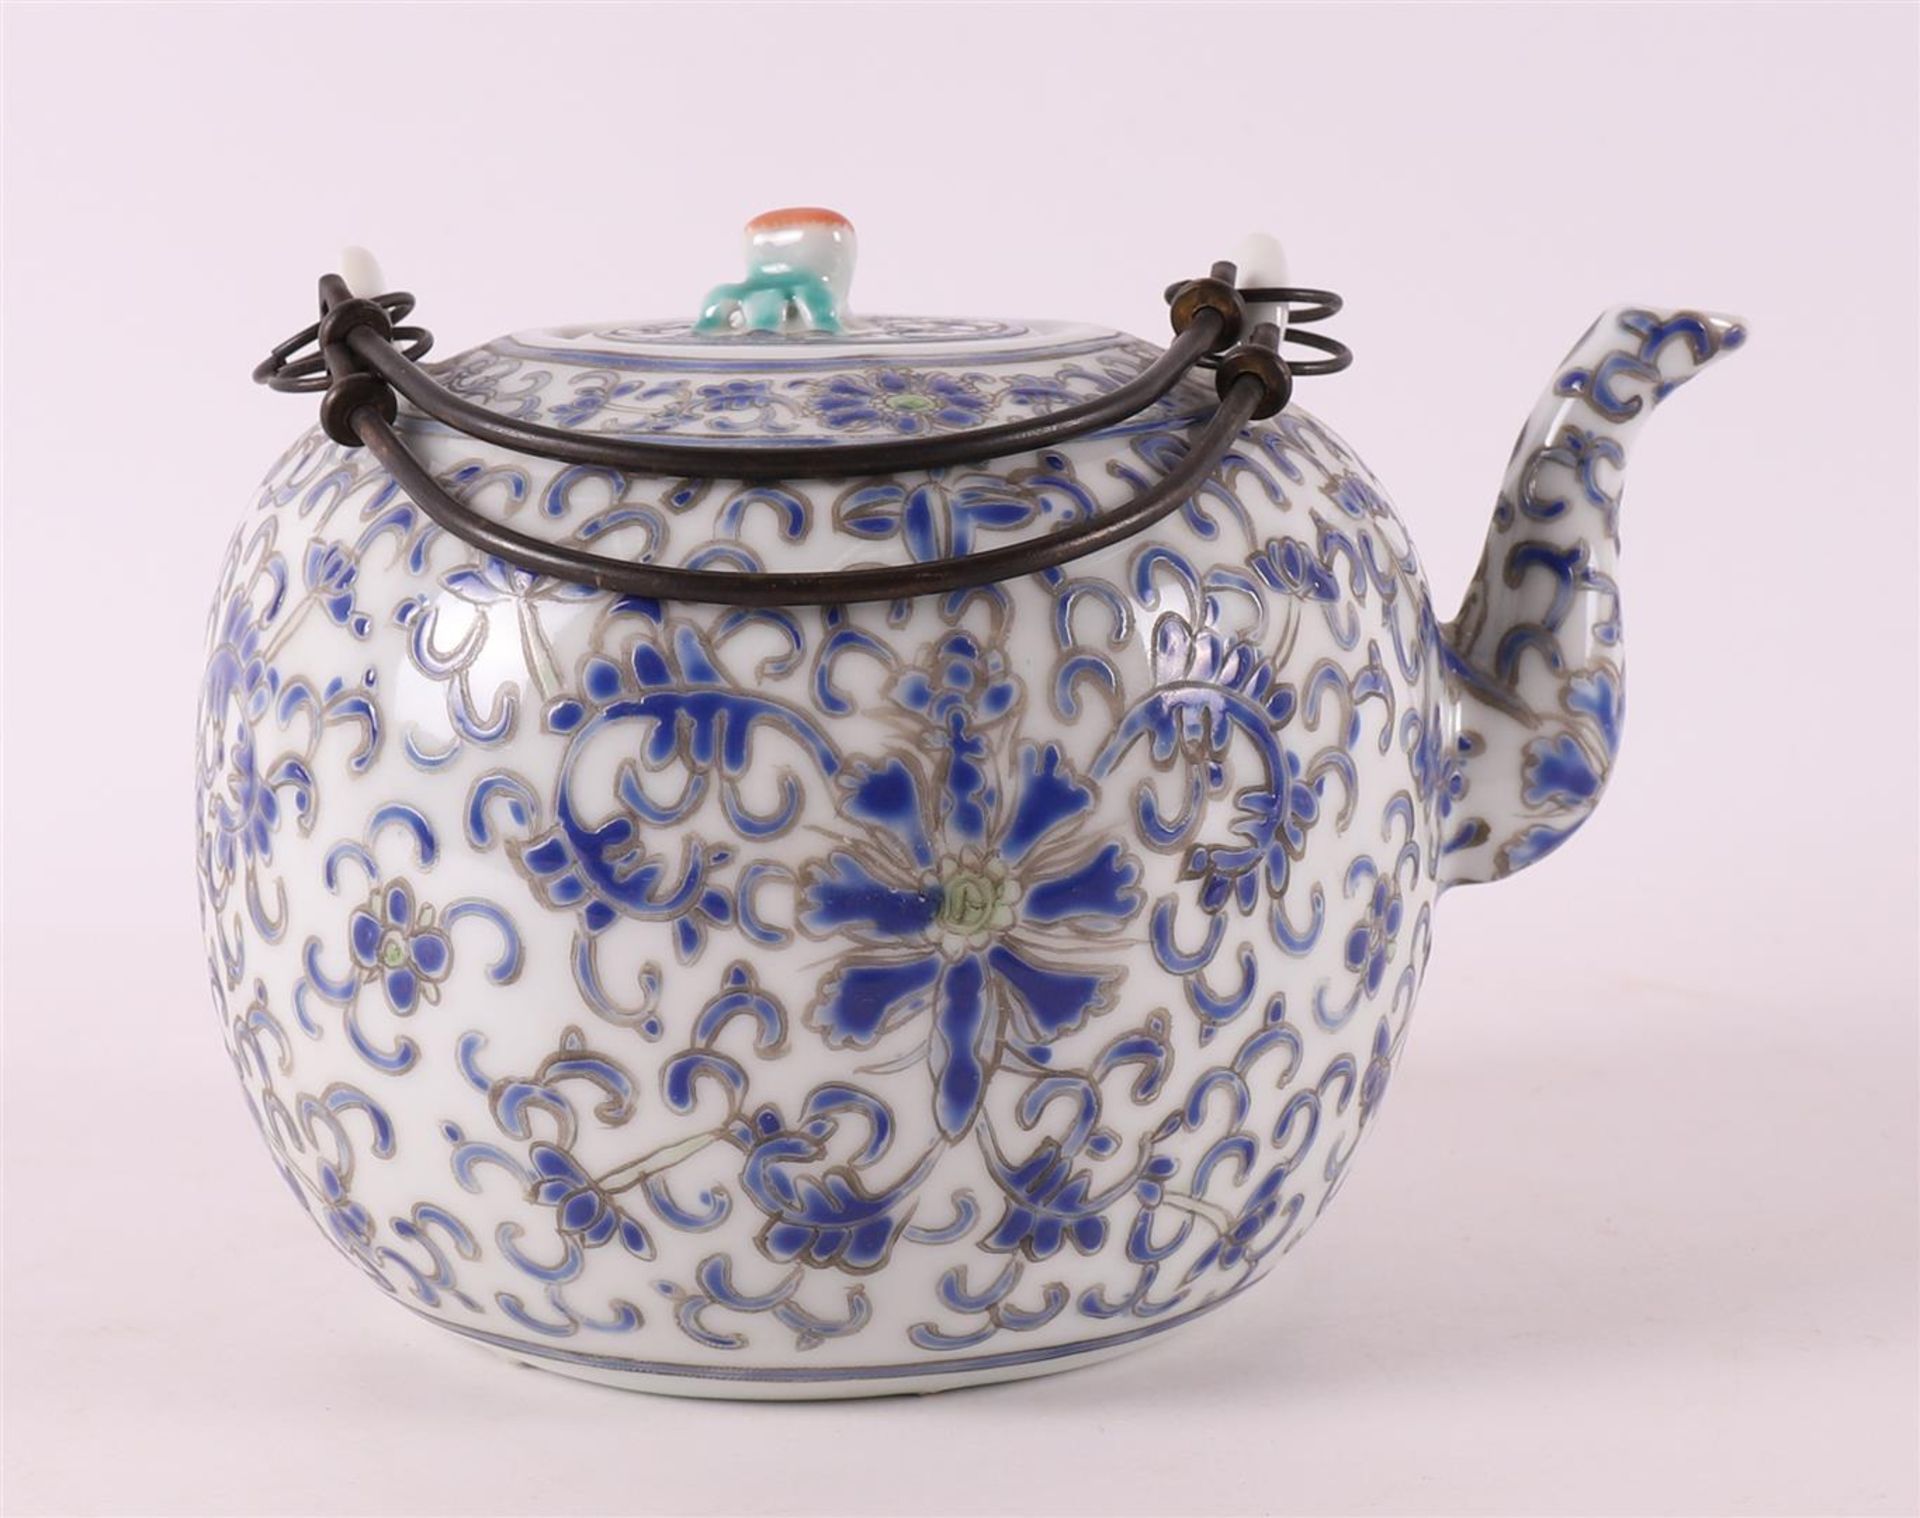 A porcelain teapot, China, circa 1900.